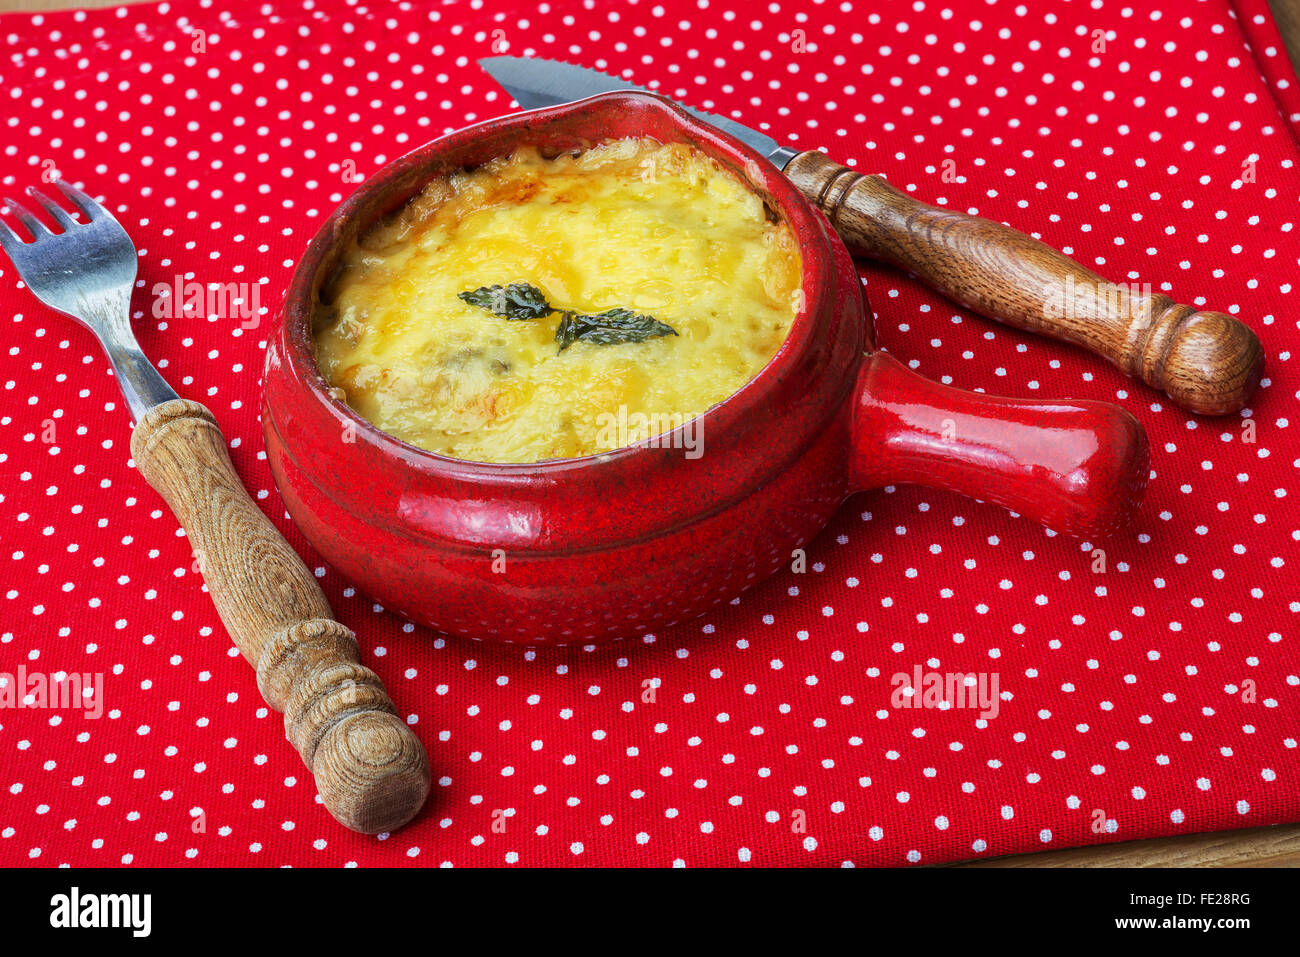 Julienne mit Champignons, Sahne und Käse auf roten Tupfen Tischdecke Stockfoto